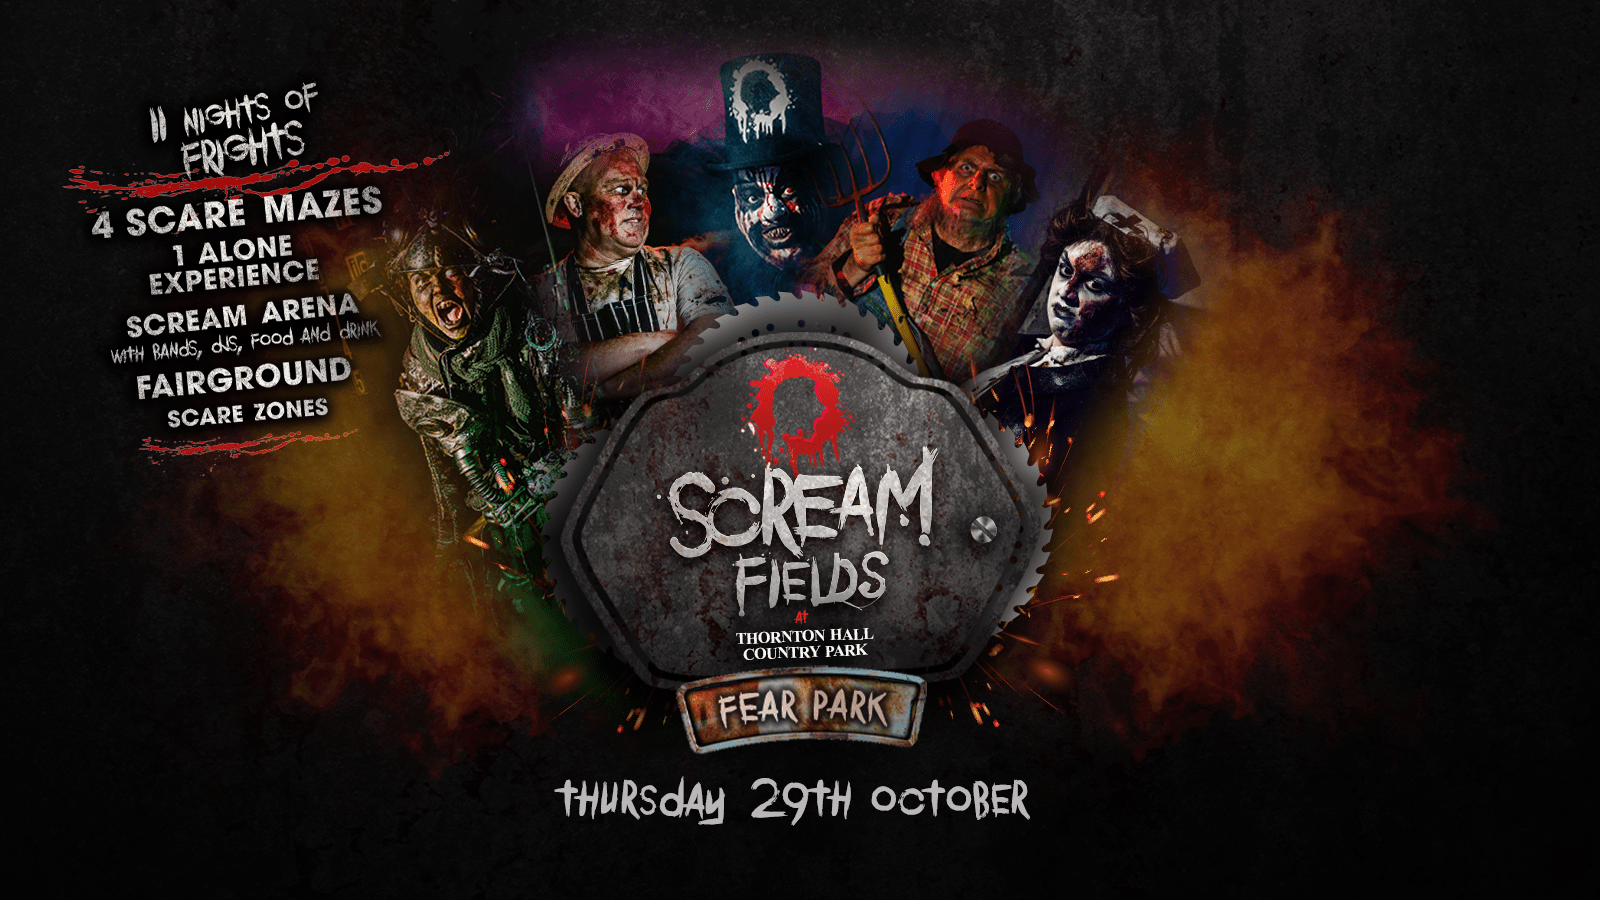 6.00PM – Screamfields: Thursday 29th October 2020